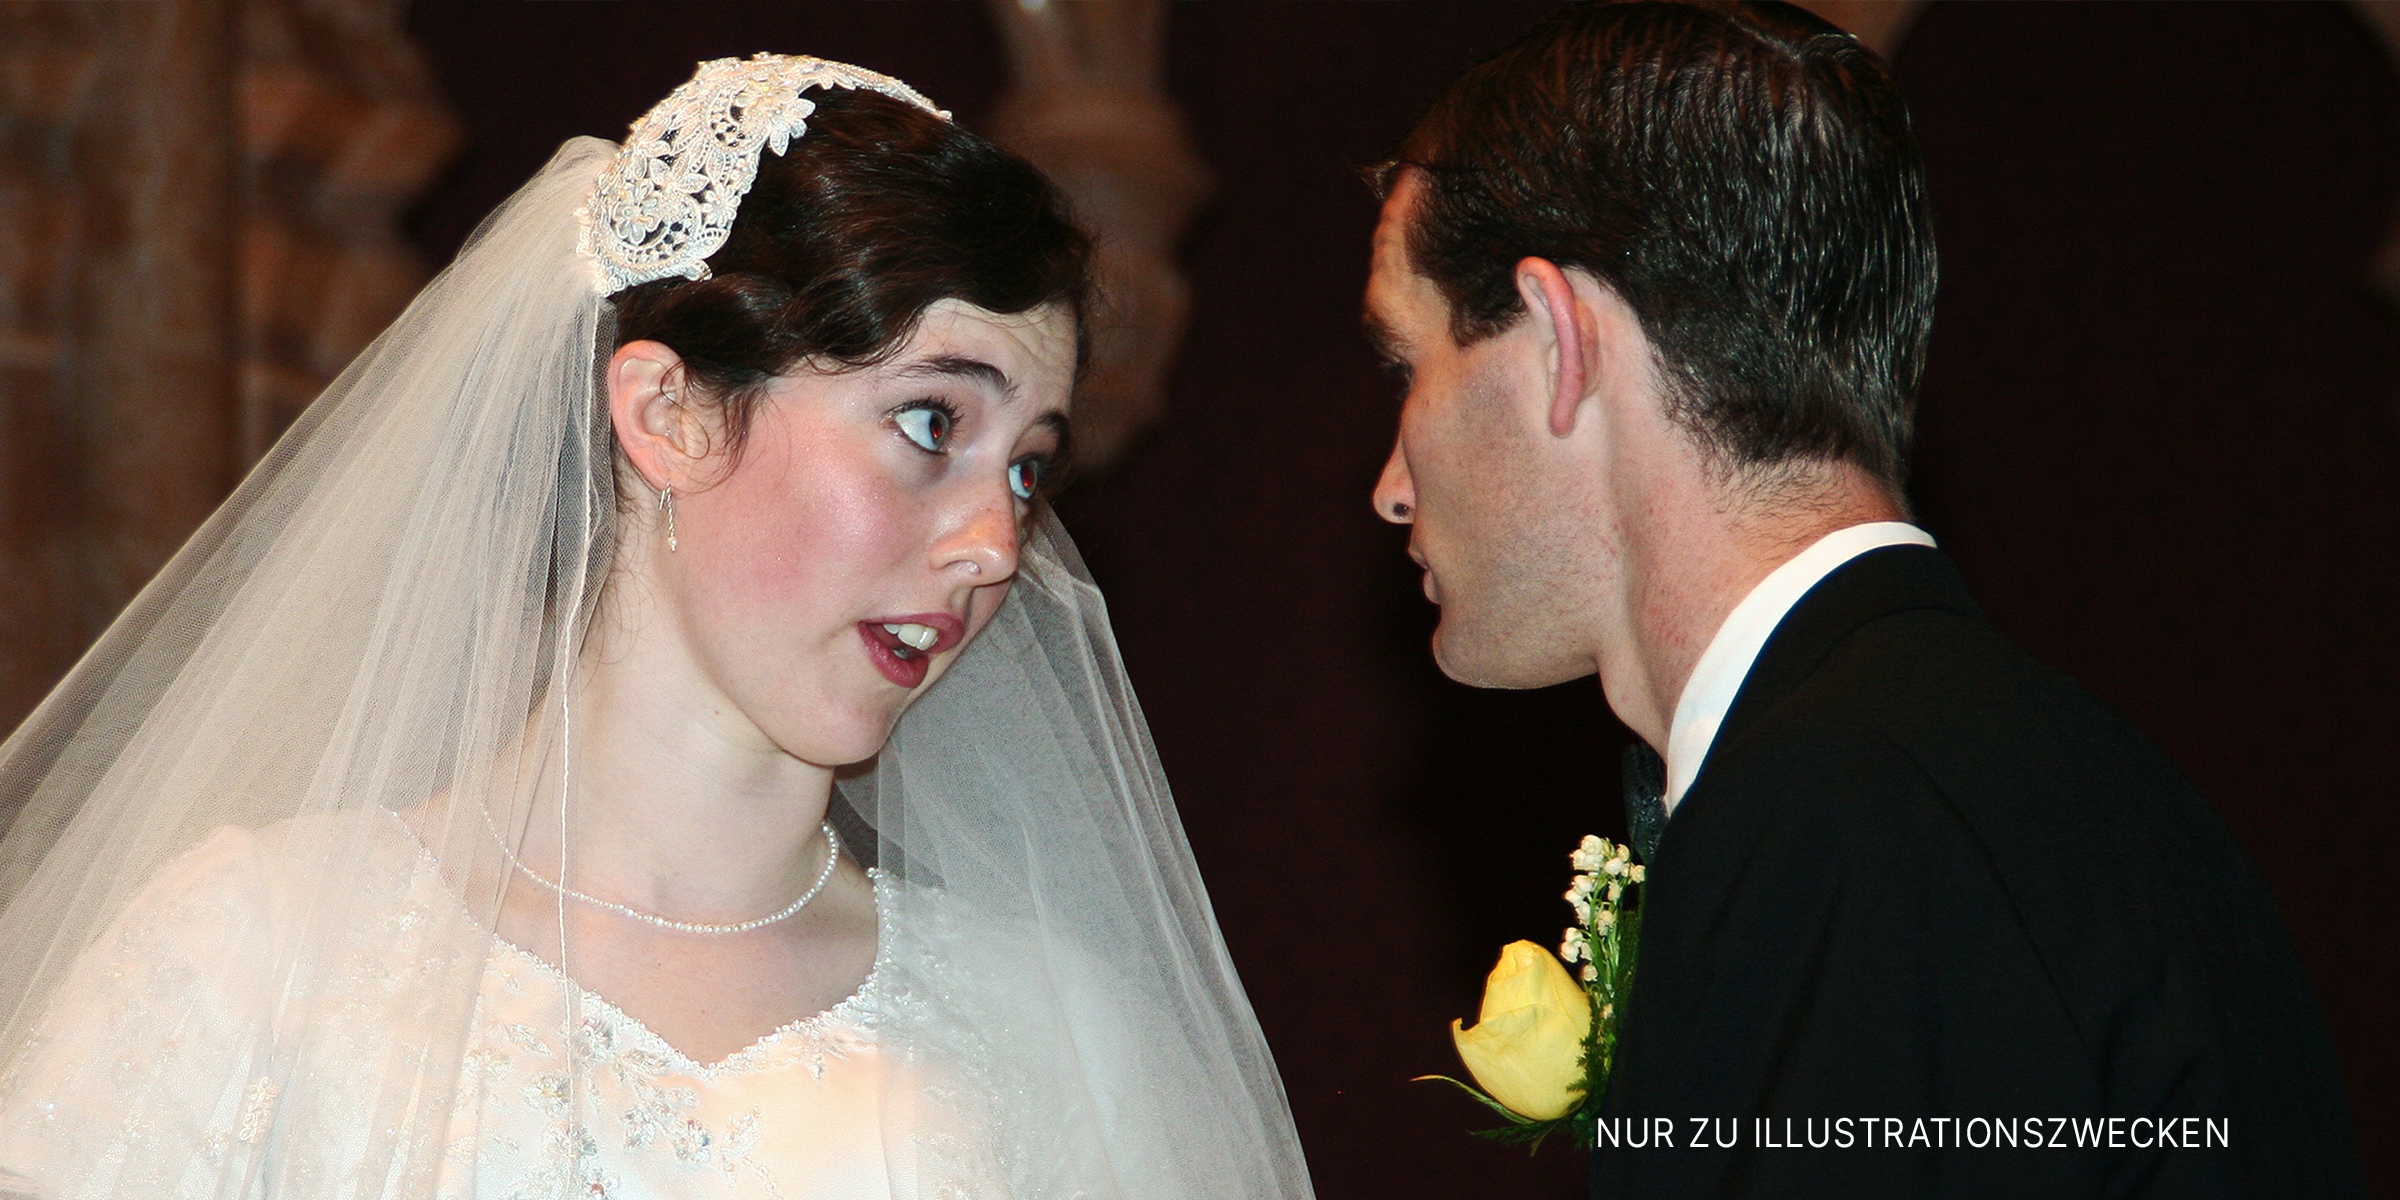 Eine Braut und ein Bräutigam, die sich gegenseitig anschauen | Quelle: Flickr/Sharon Mollerus (CC BY 2.0)